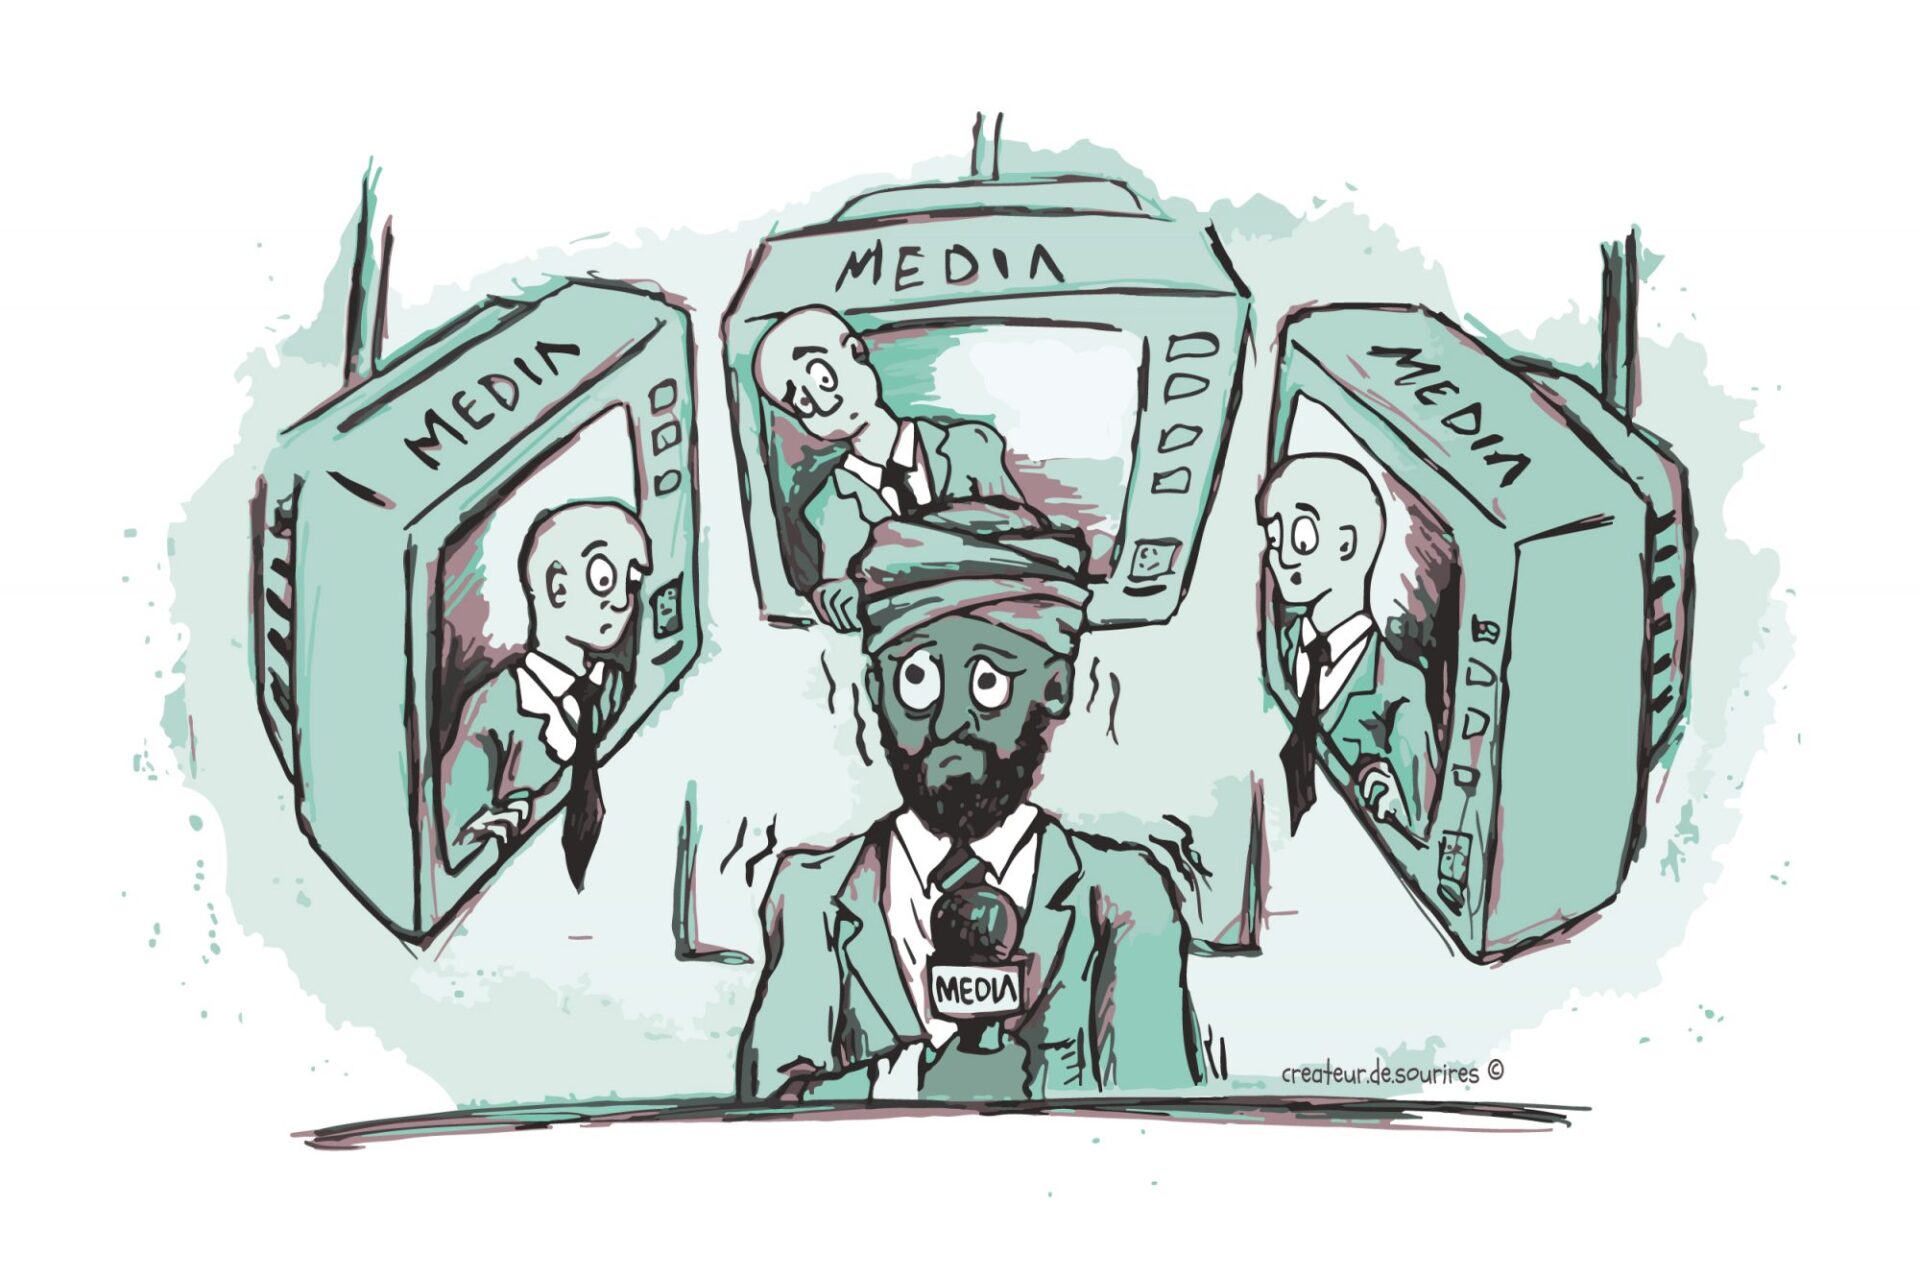 Ouvrir le débat sur la diversité en journalisme